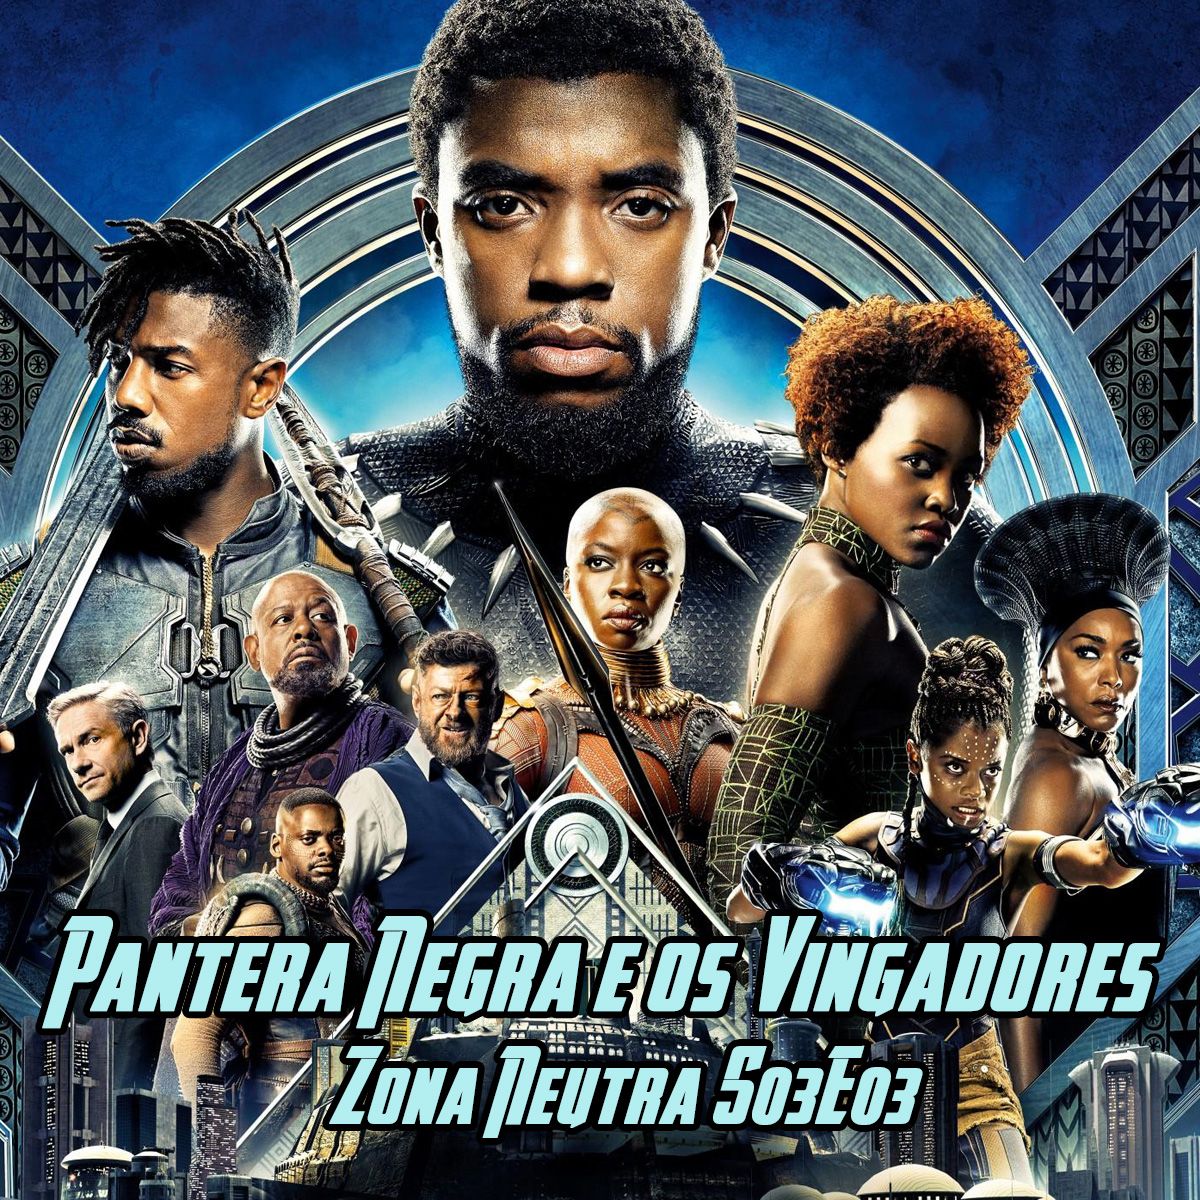 ZONA NEUTRA - S03E03 - Cinema Marvel - Pantera Negra e Vingadores